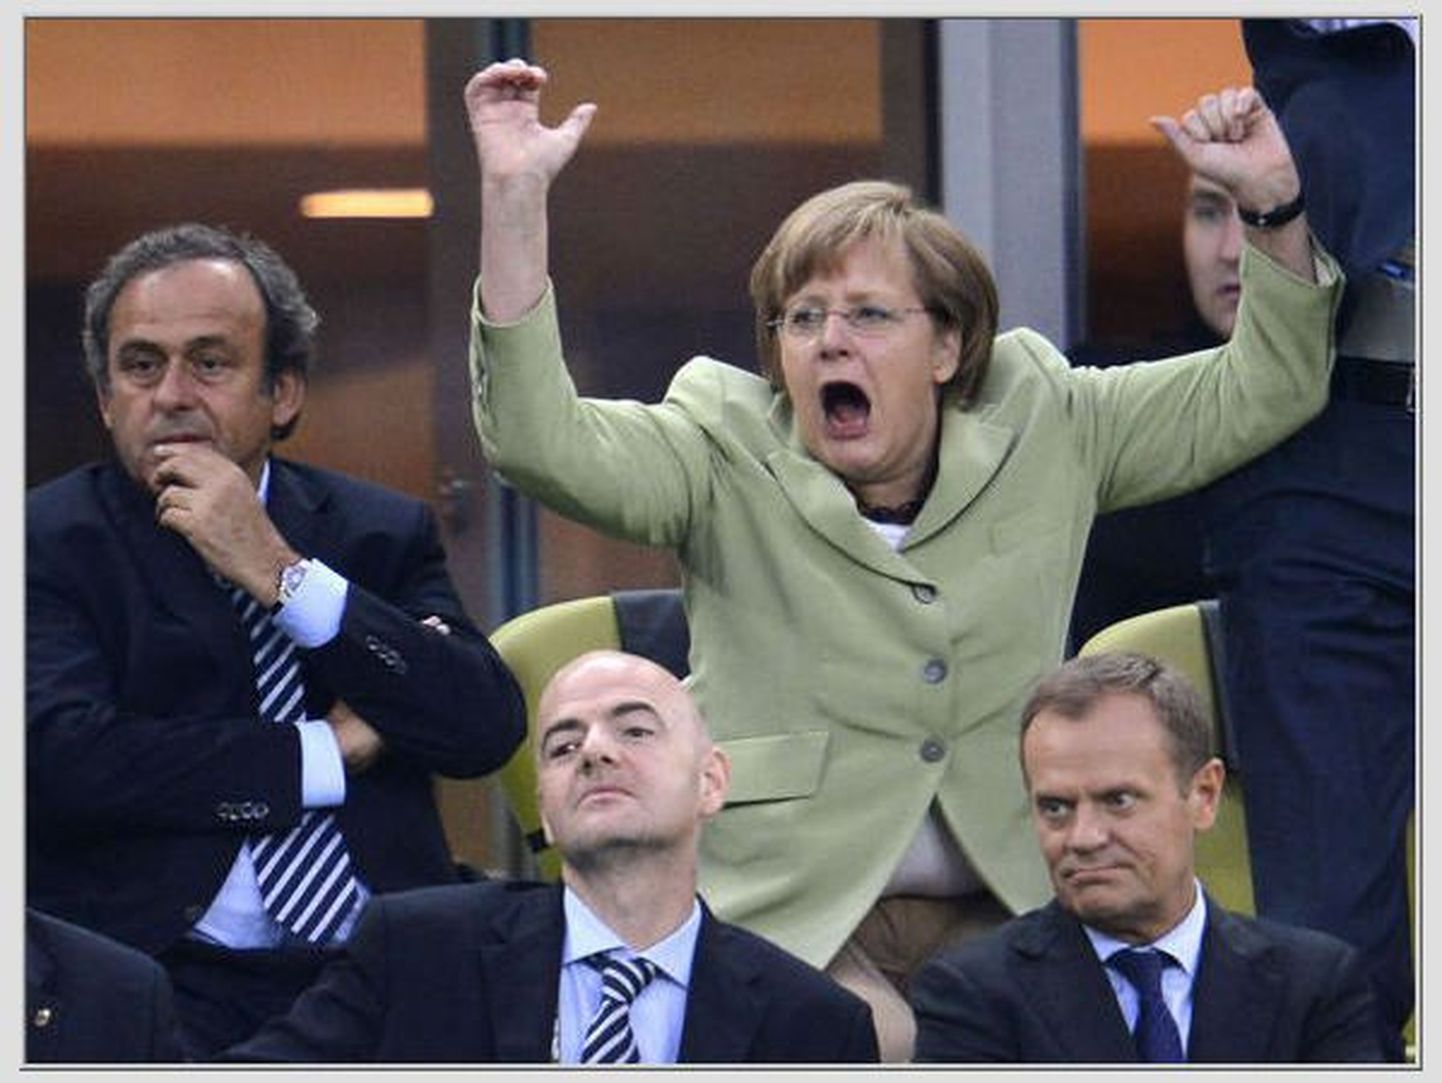 Saksa kantsler Angela Merkel tähistab väravat, mille lõi Philip Lahm kreeklaste väravasse Euro 2012 veerandfinaalis.